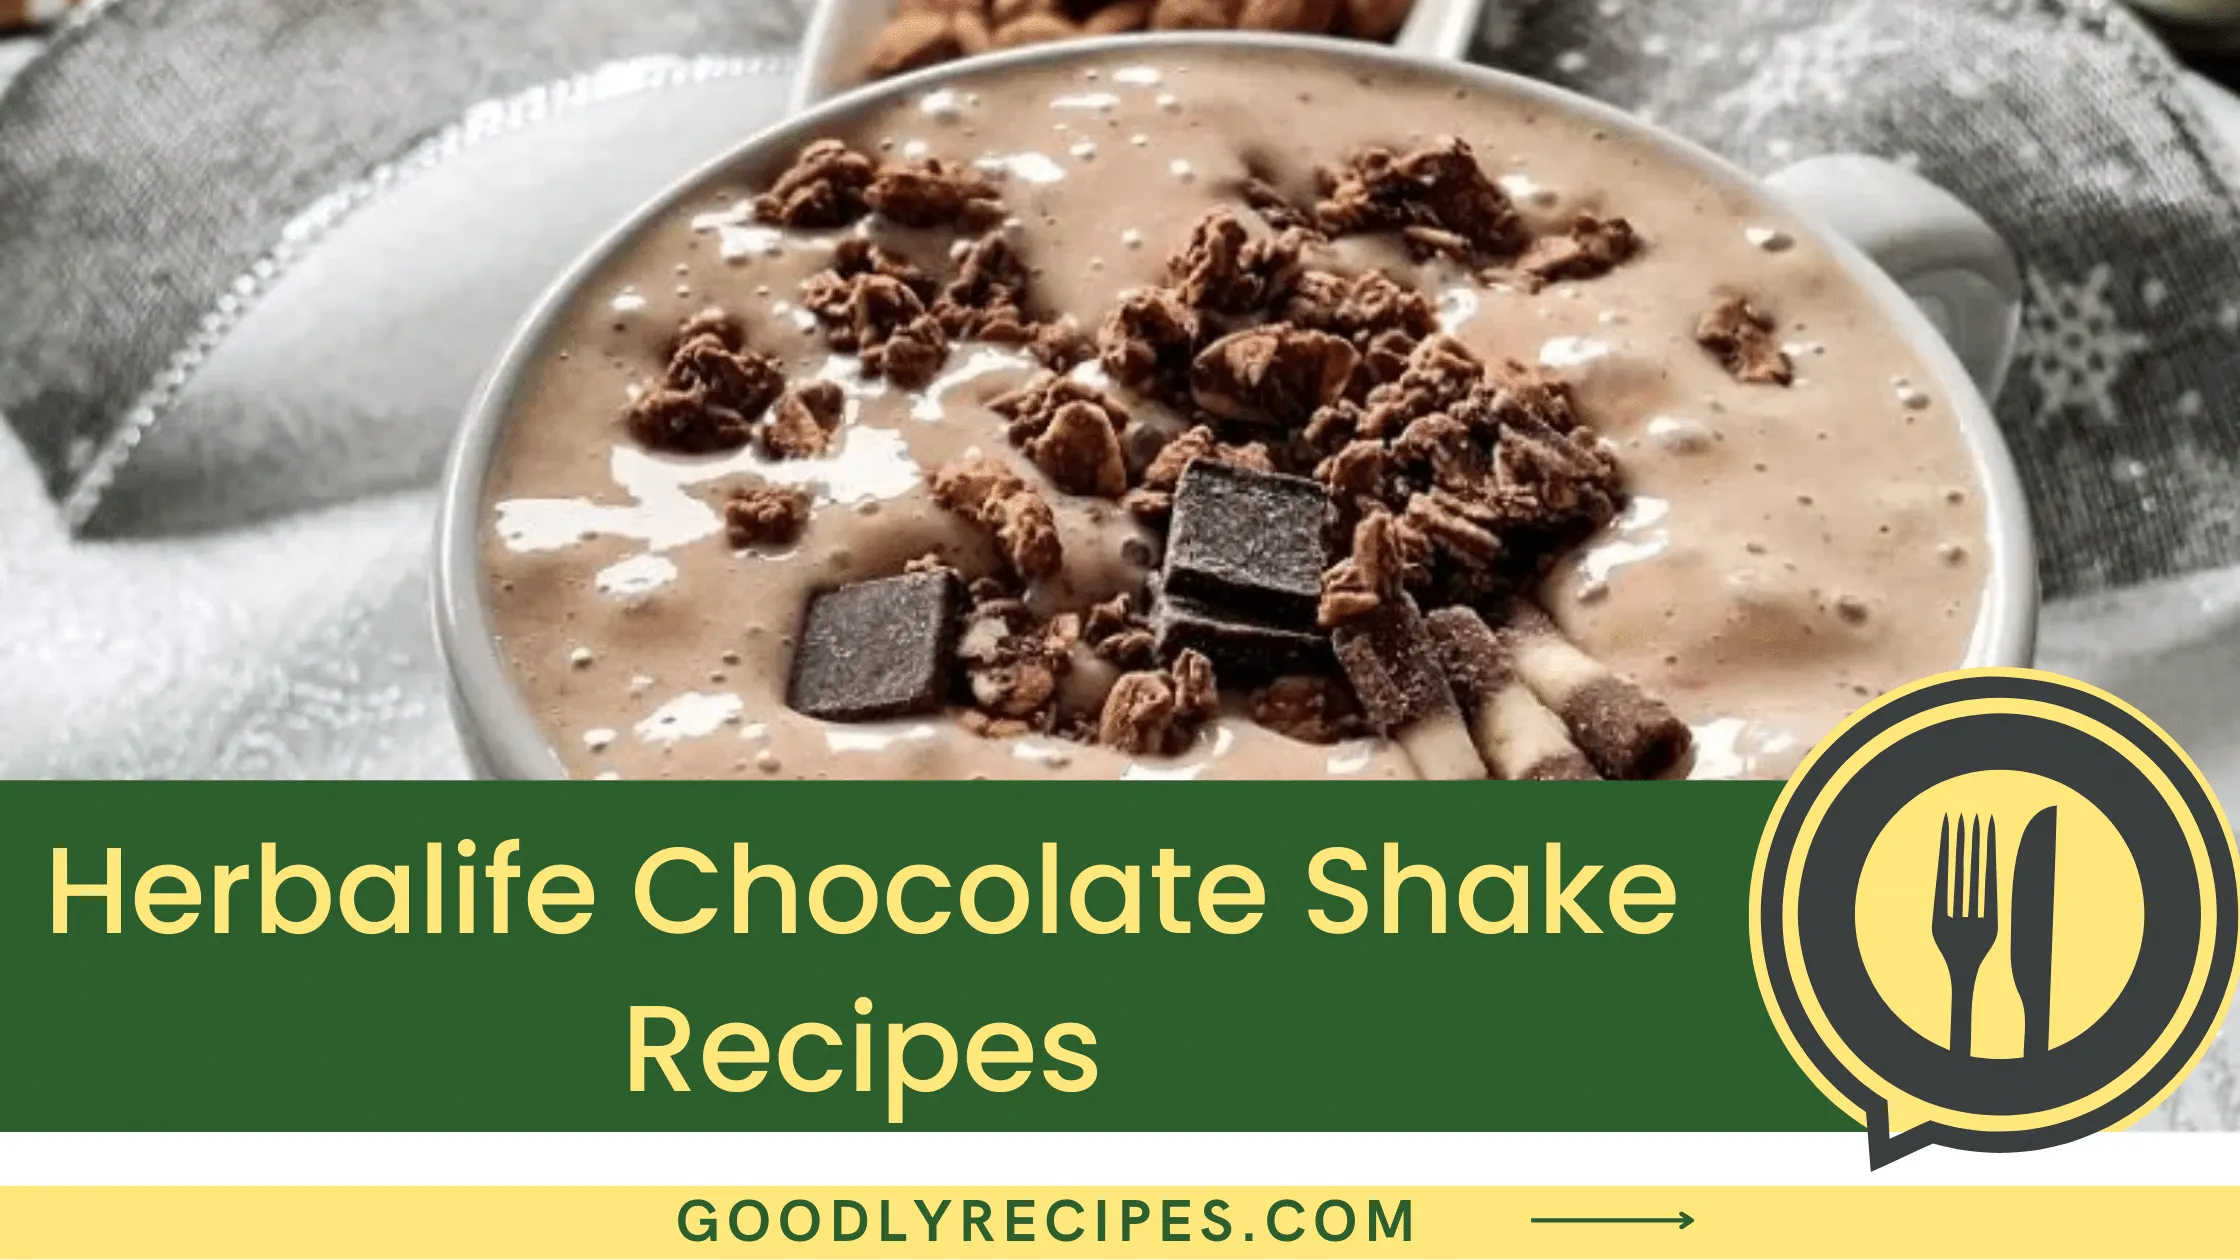 What is Herbalife Chocolate Shake?